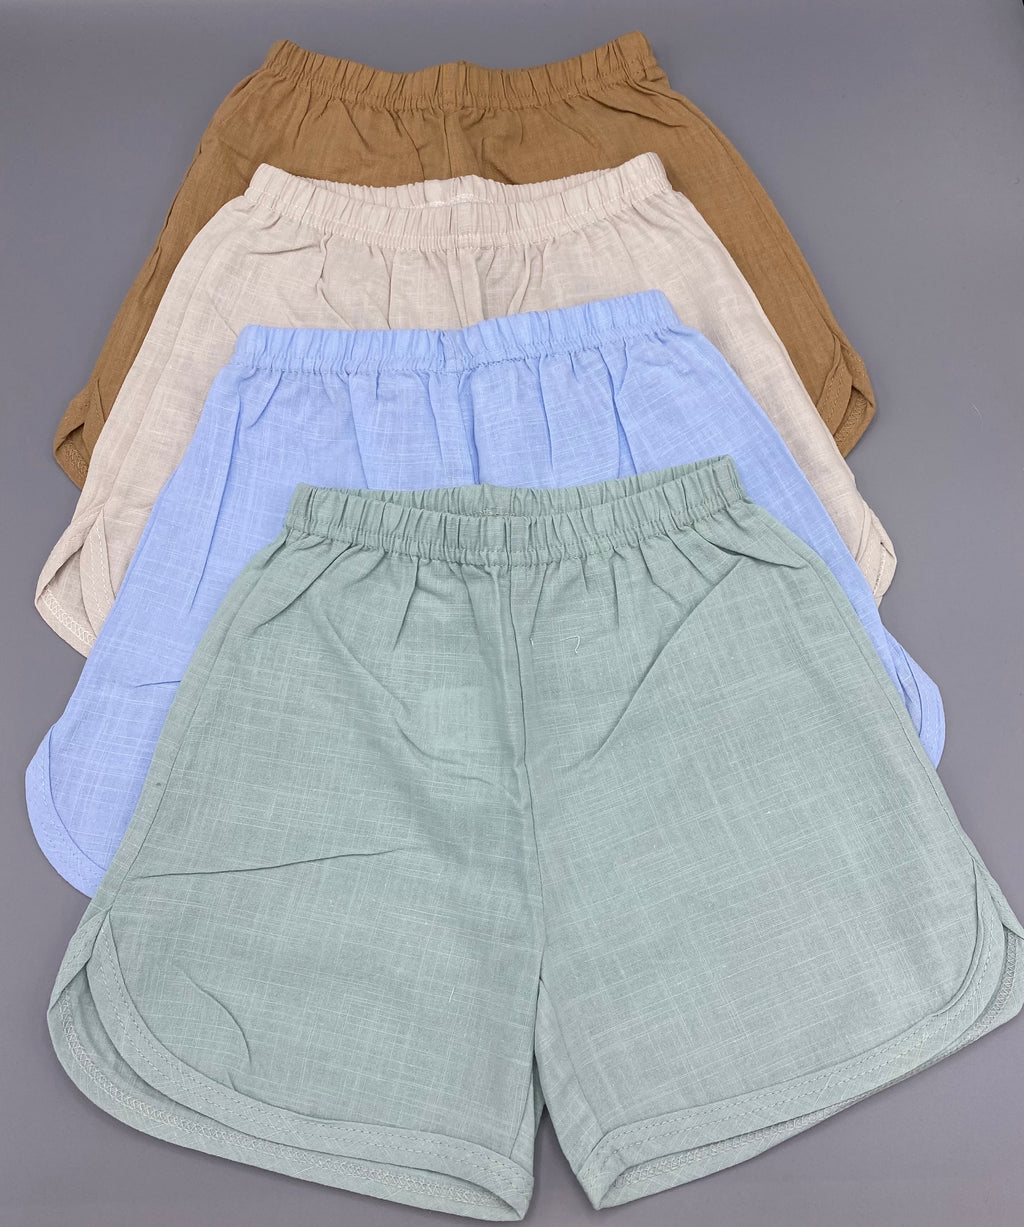 Mint green linen shorts